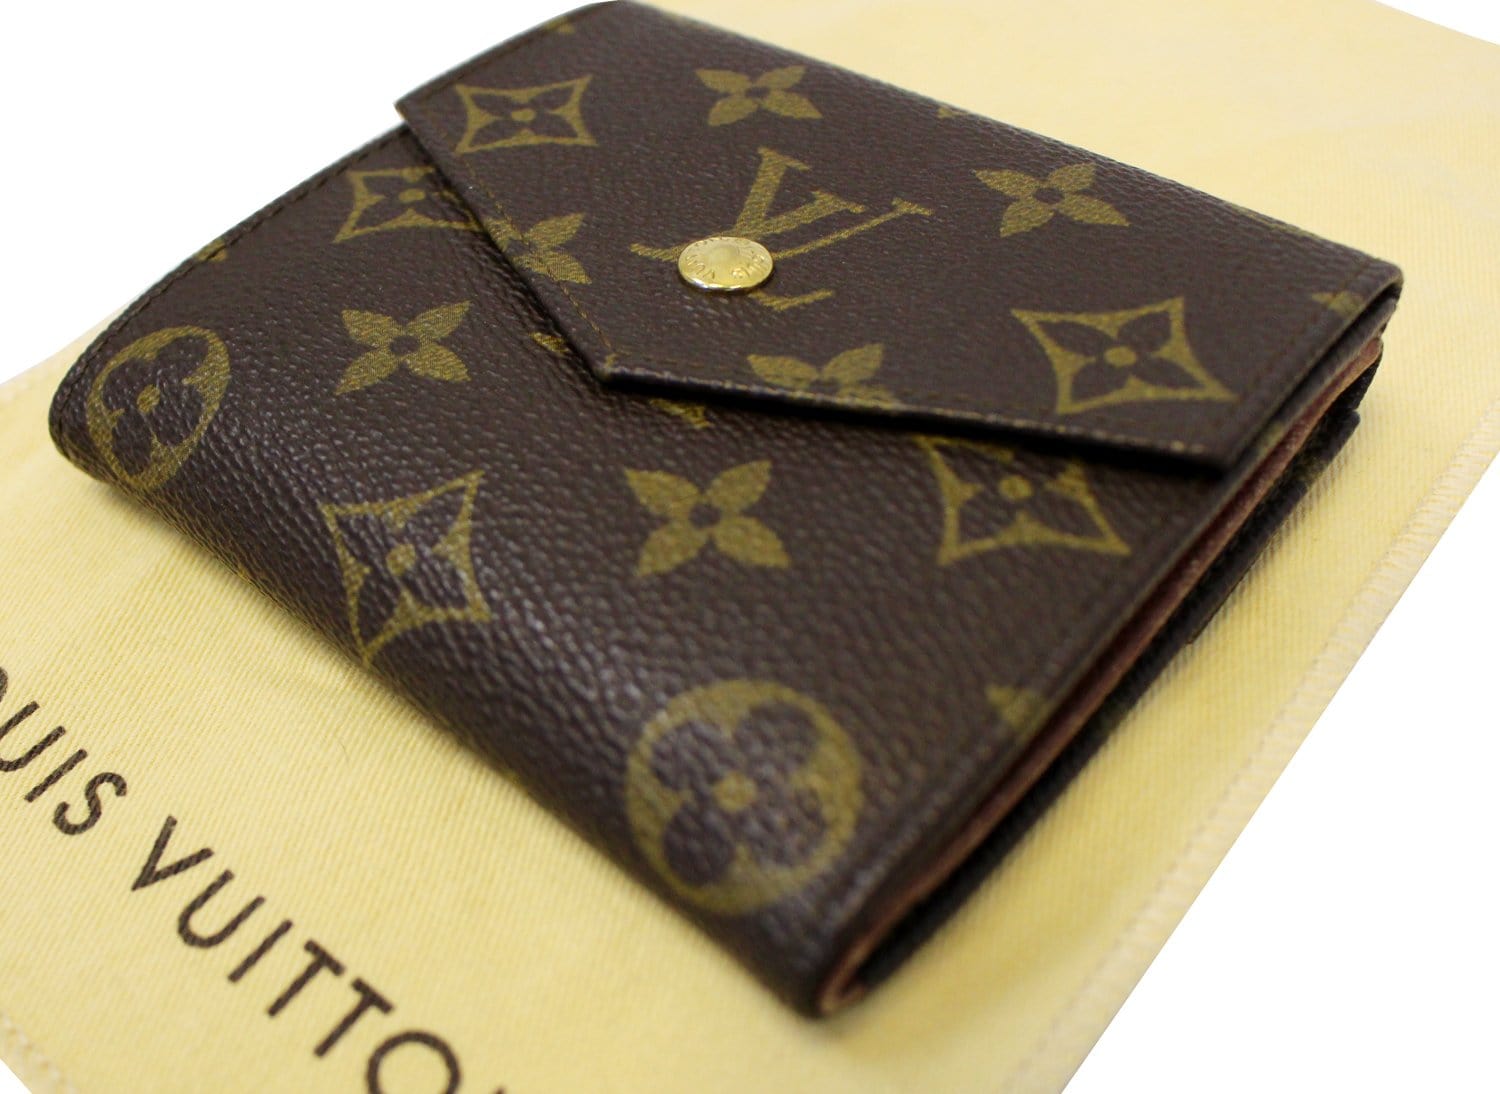 Auth Louis Vuitton Monogram Portefeuille Elise Trifold wallet PVC 5l390300s